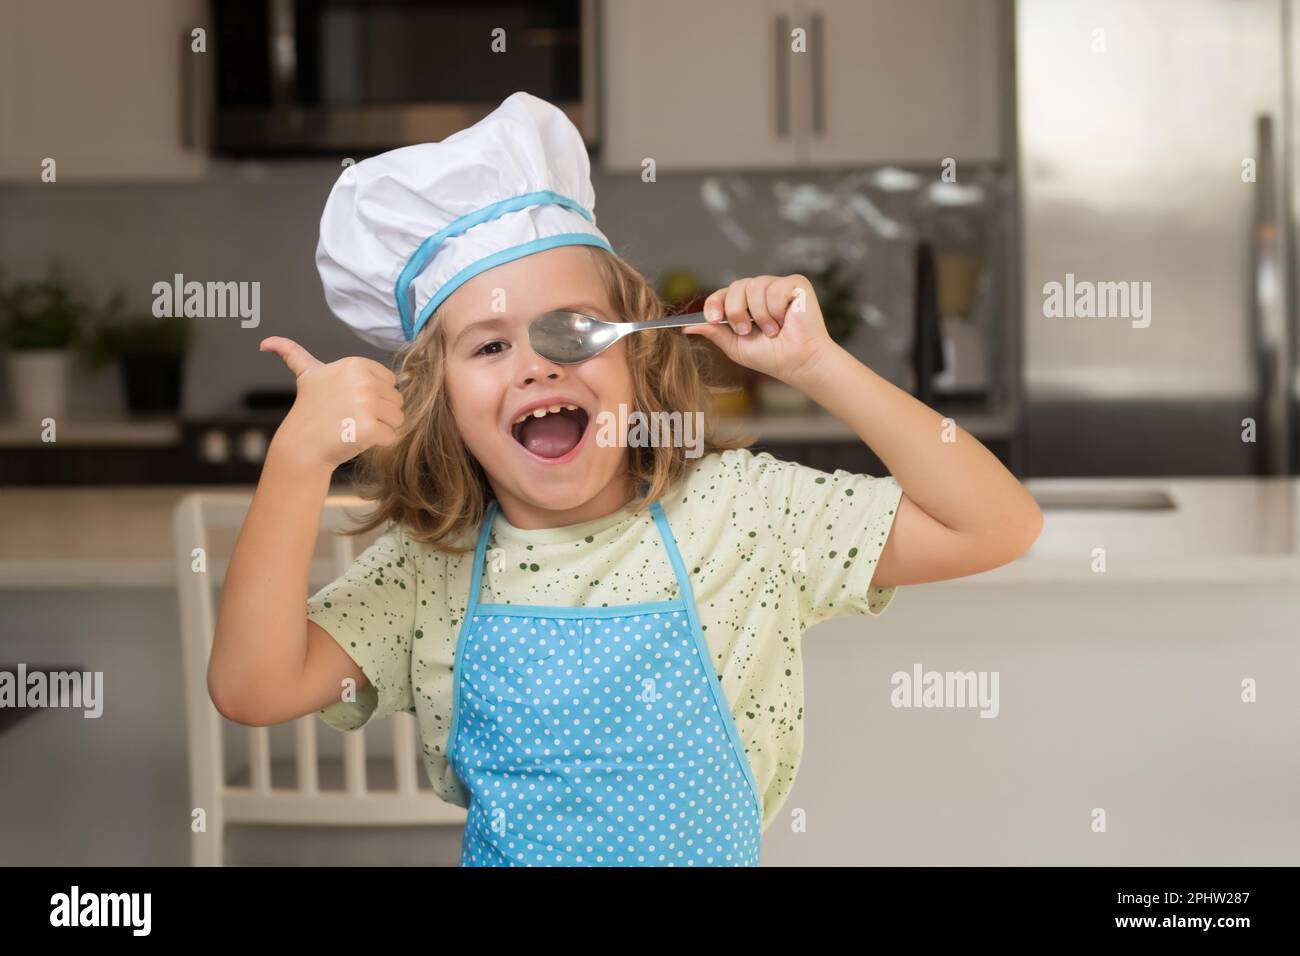 Divertido cocinero niño pequeño usando gorro uniforme de cocina y delantal  de comida cocida en la cocina. Los niños están preparando la masa,  cocinando galletas en la cocina Fotografía de stock 